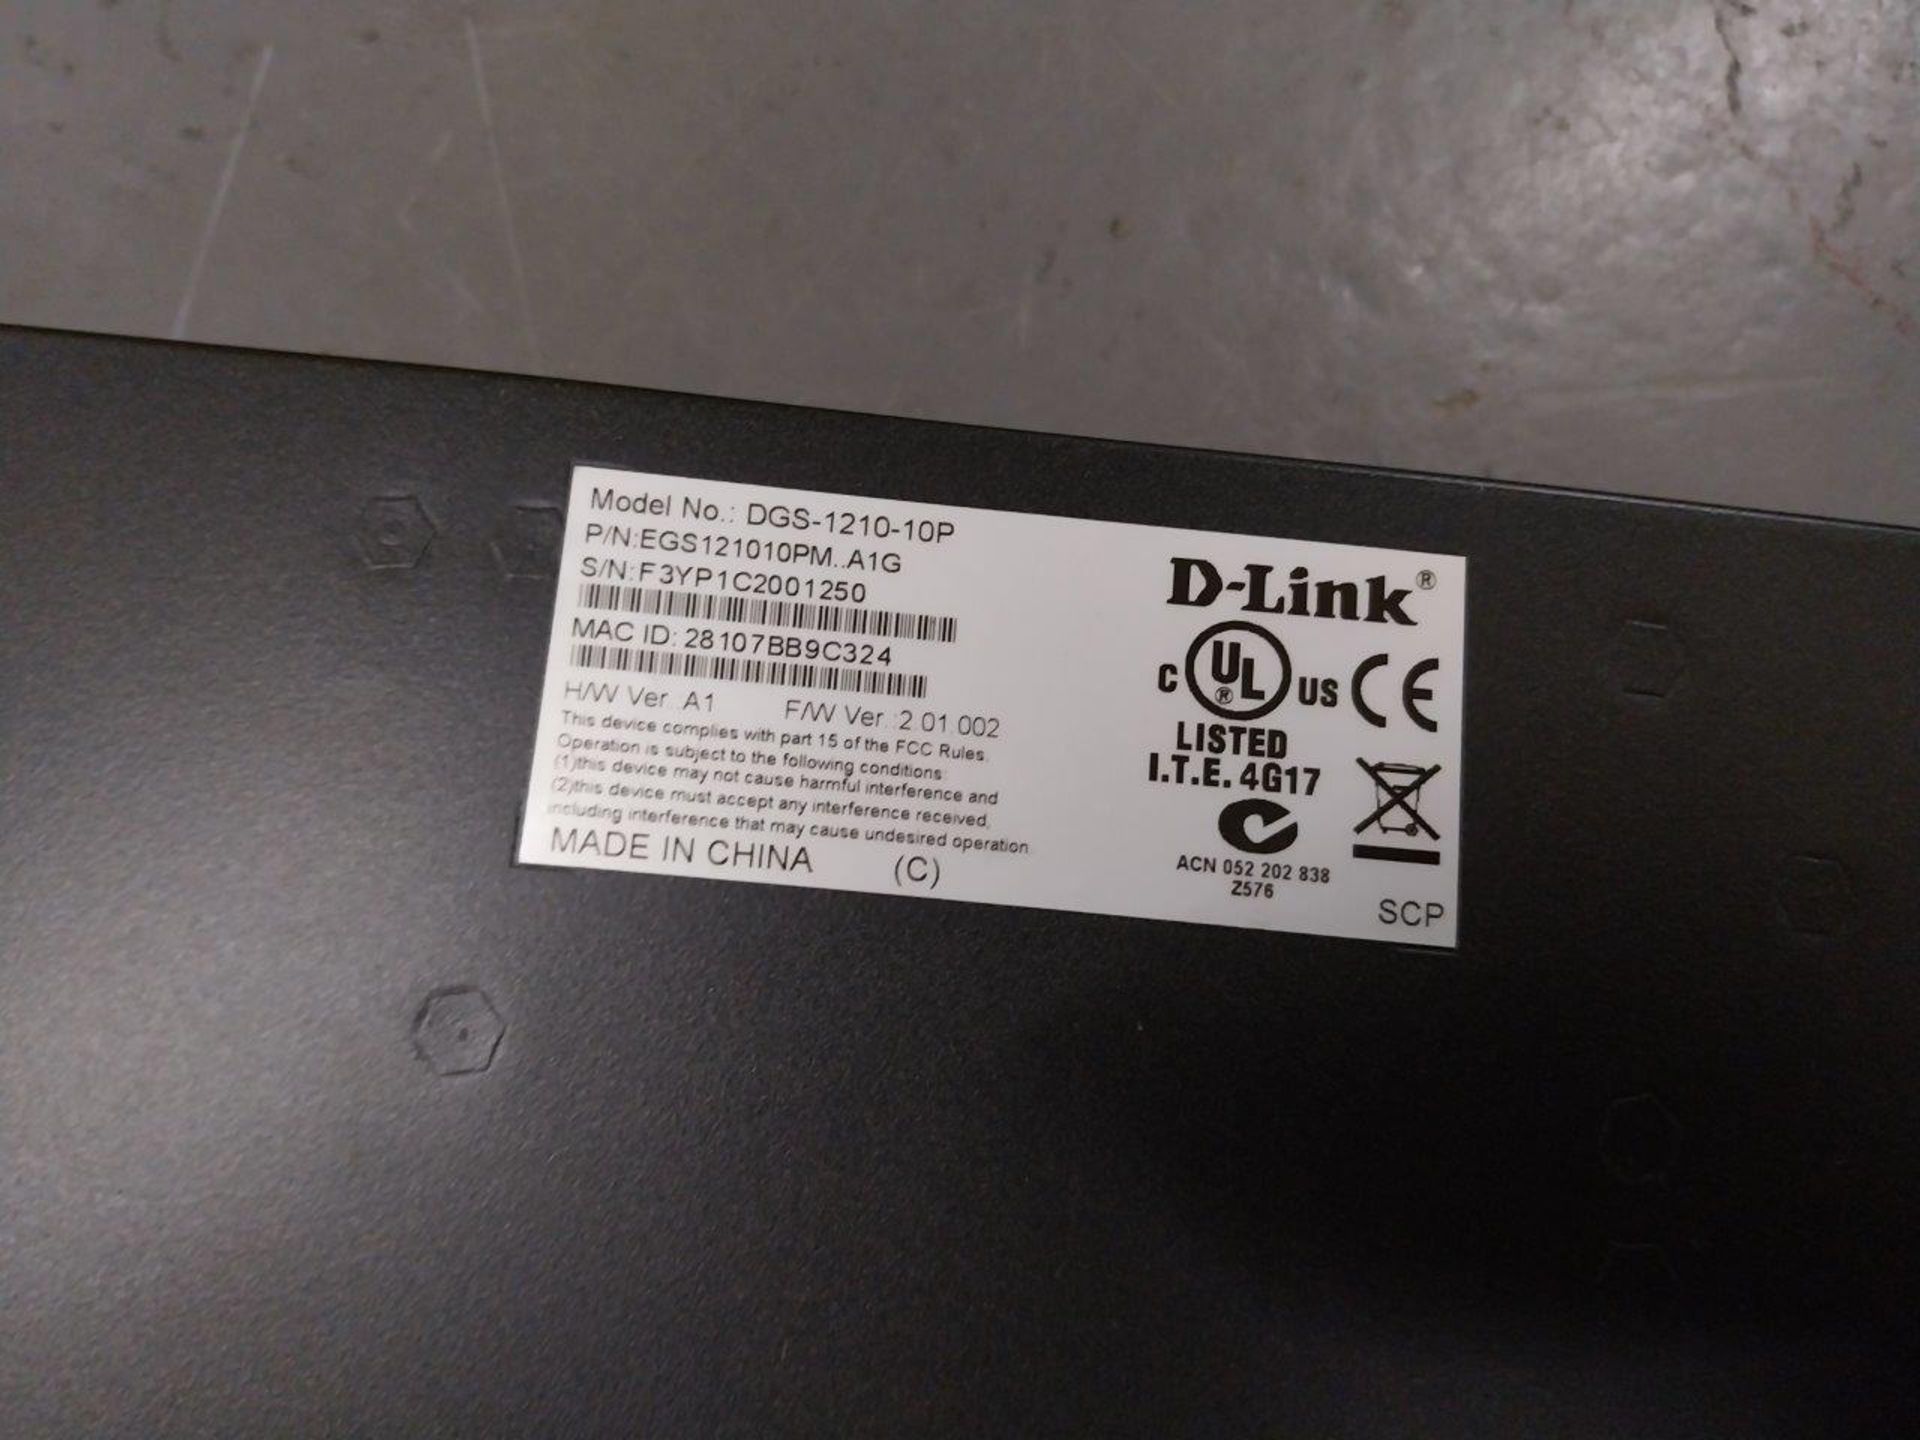 D-LINK DGS-1210-10P Web Smart Switch - Image 3 of 3